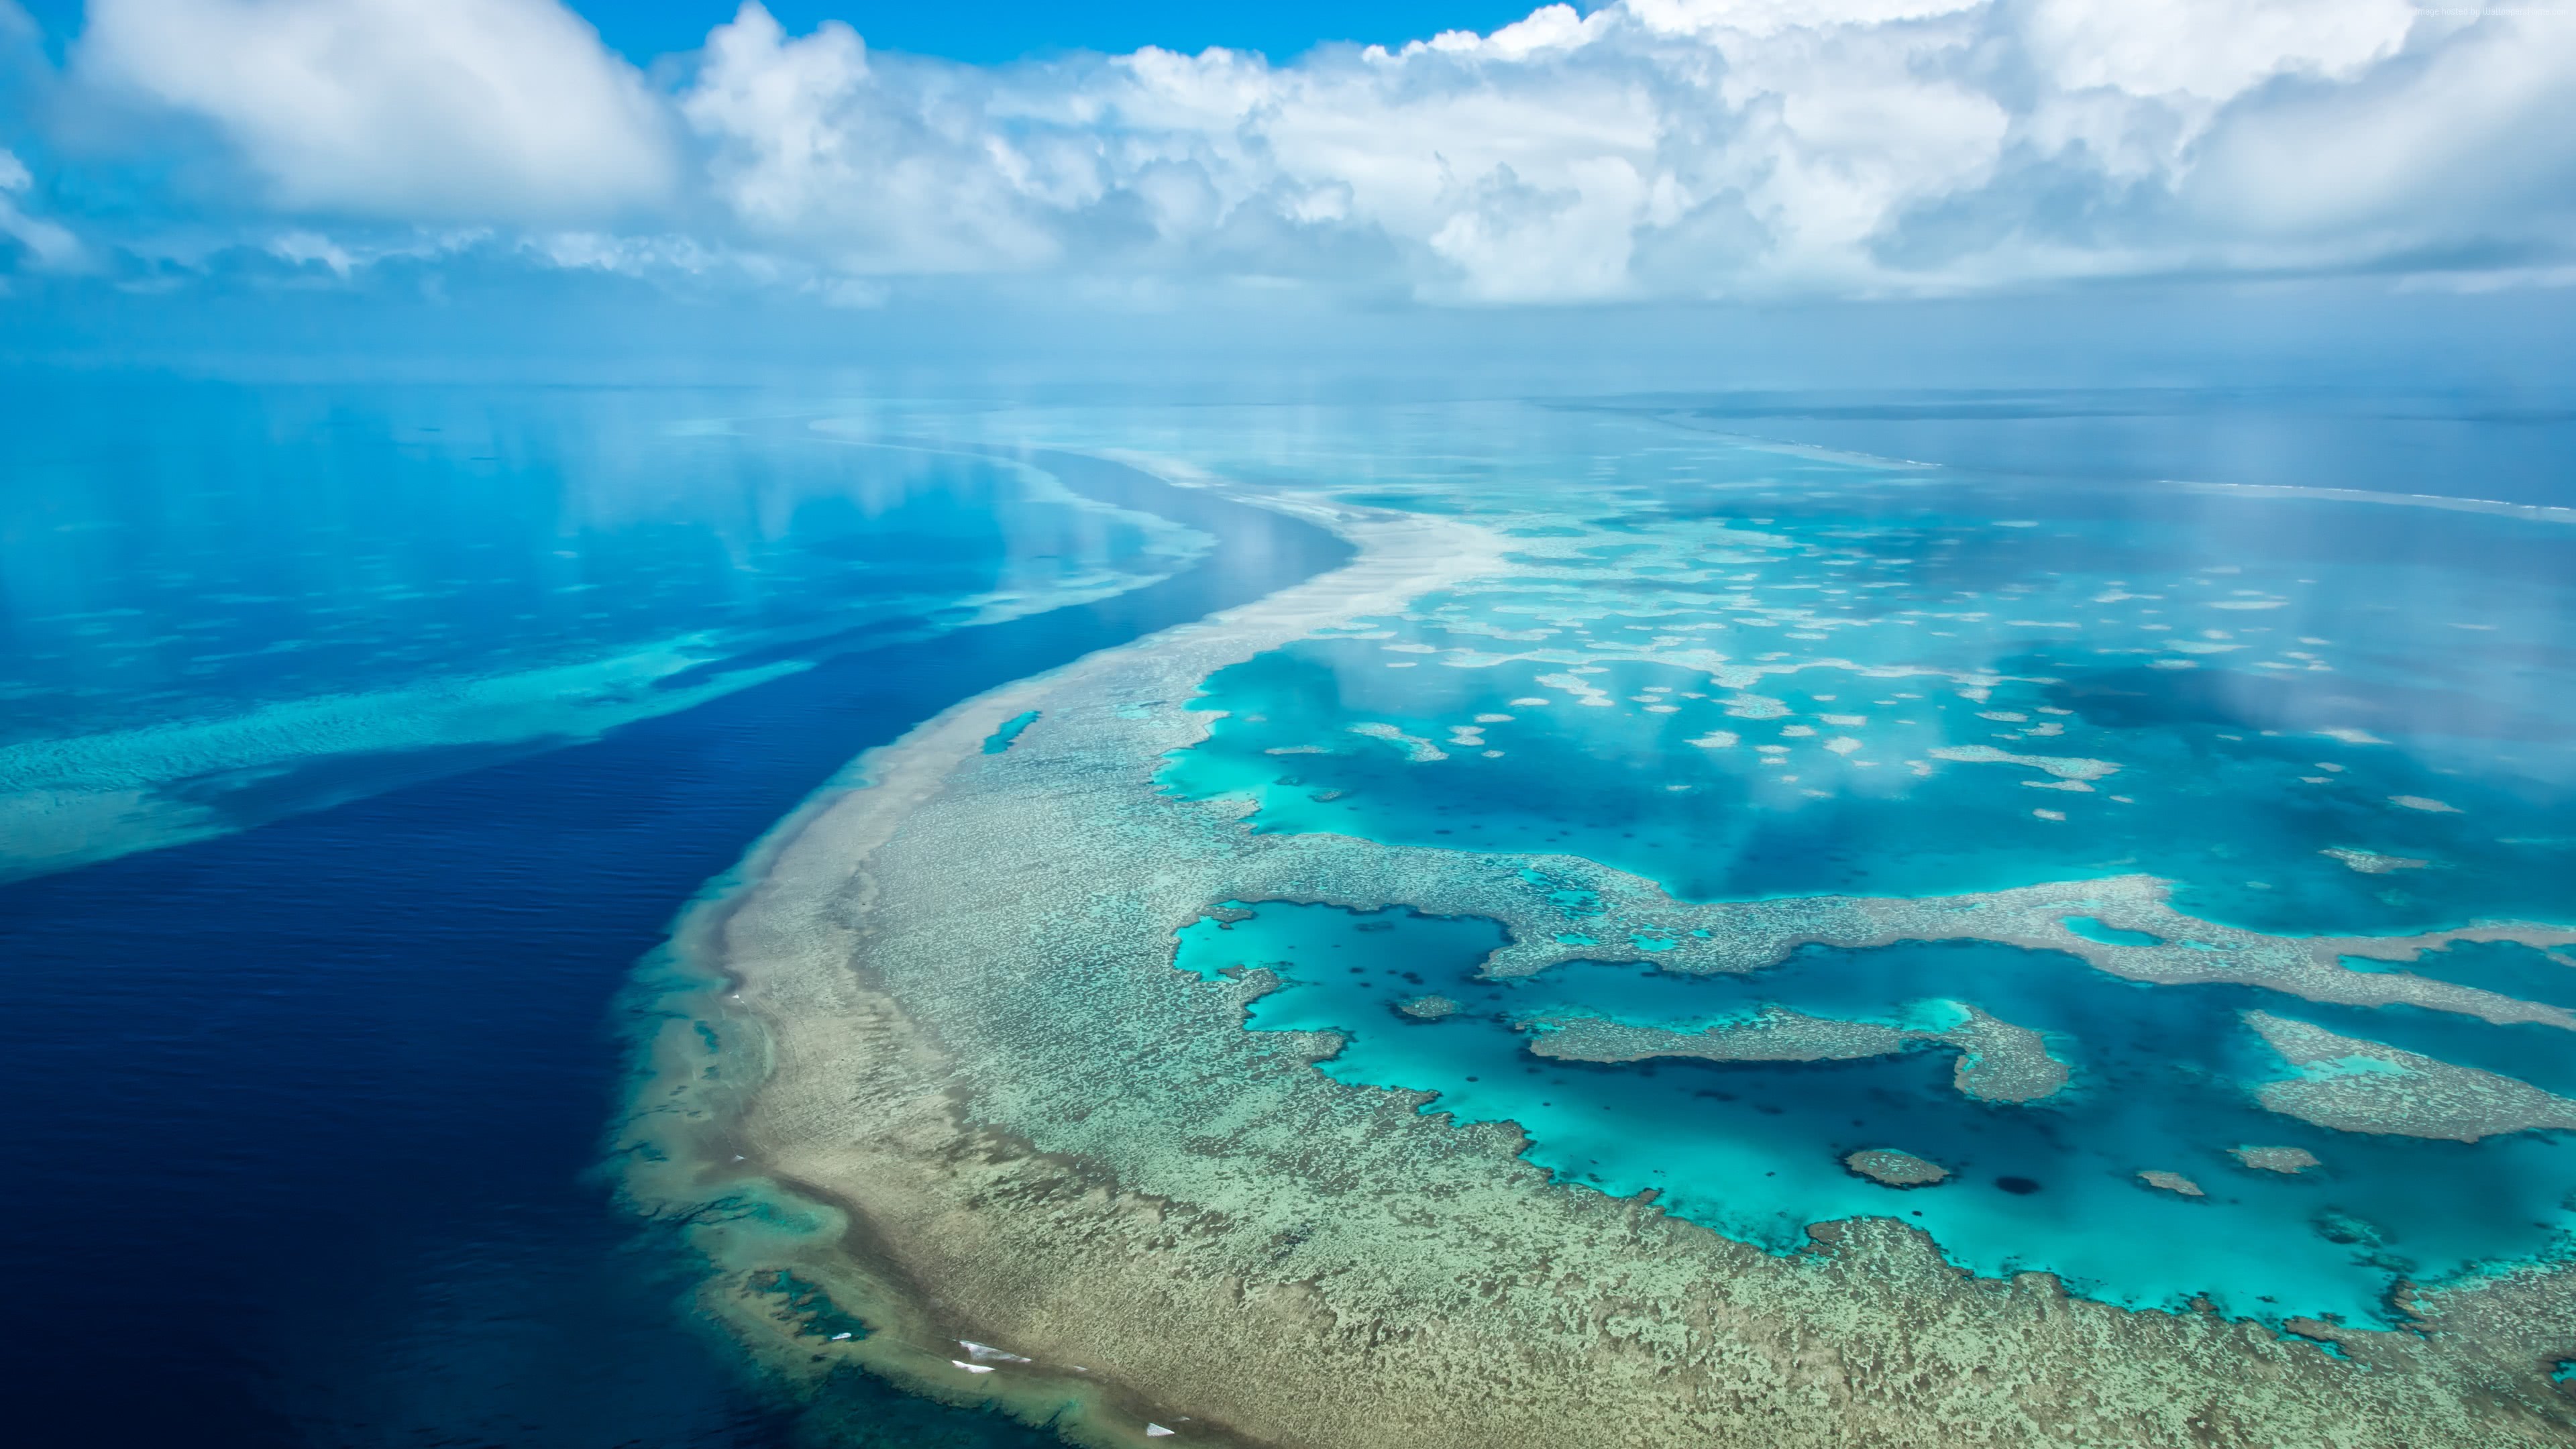 Great Barrier Reef Australia UHD 4K Wallpaper | Pixelz